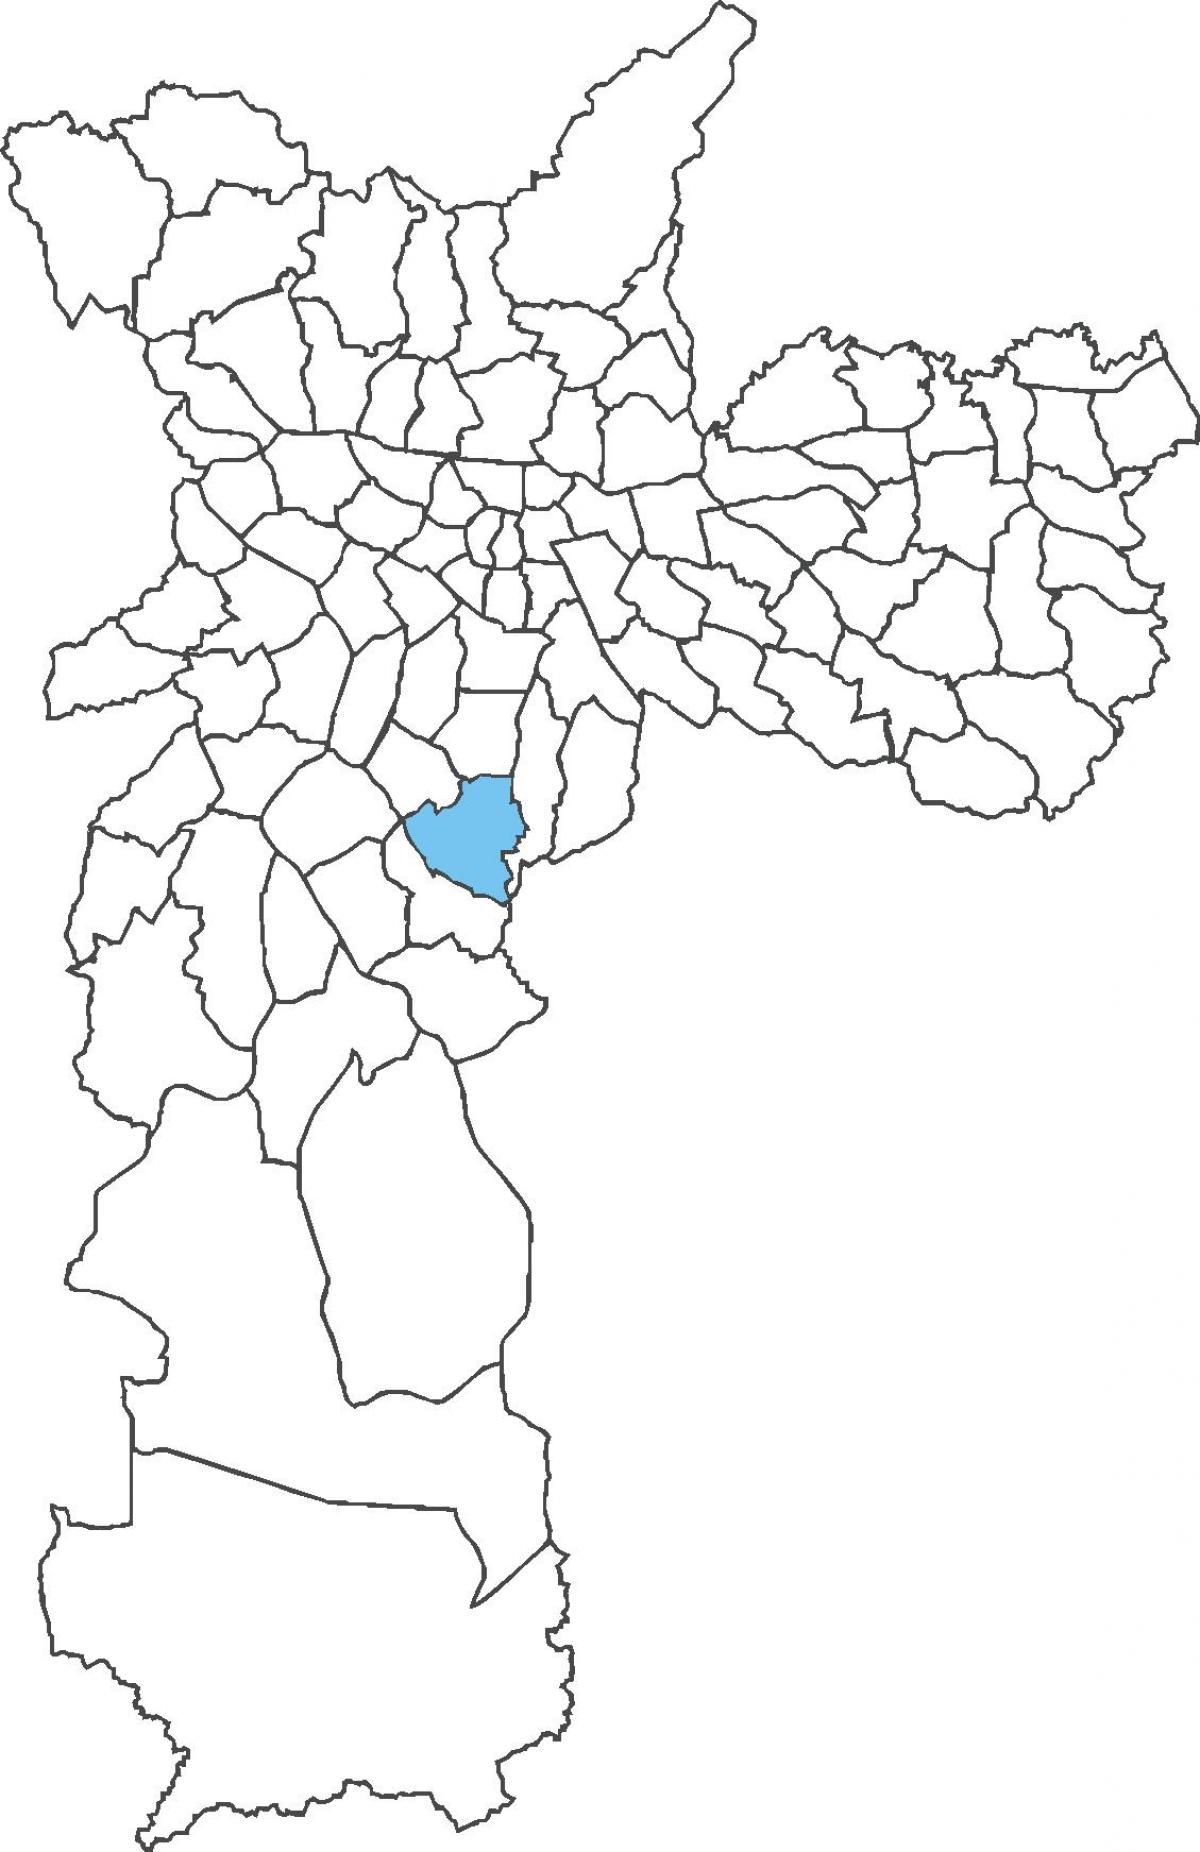 Mapa do distrito de Jabaquara